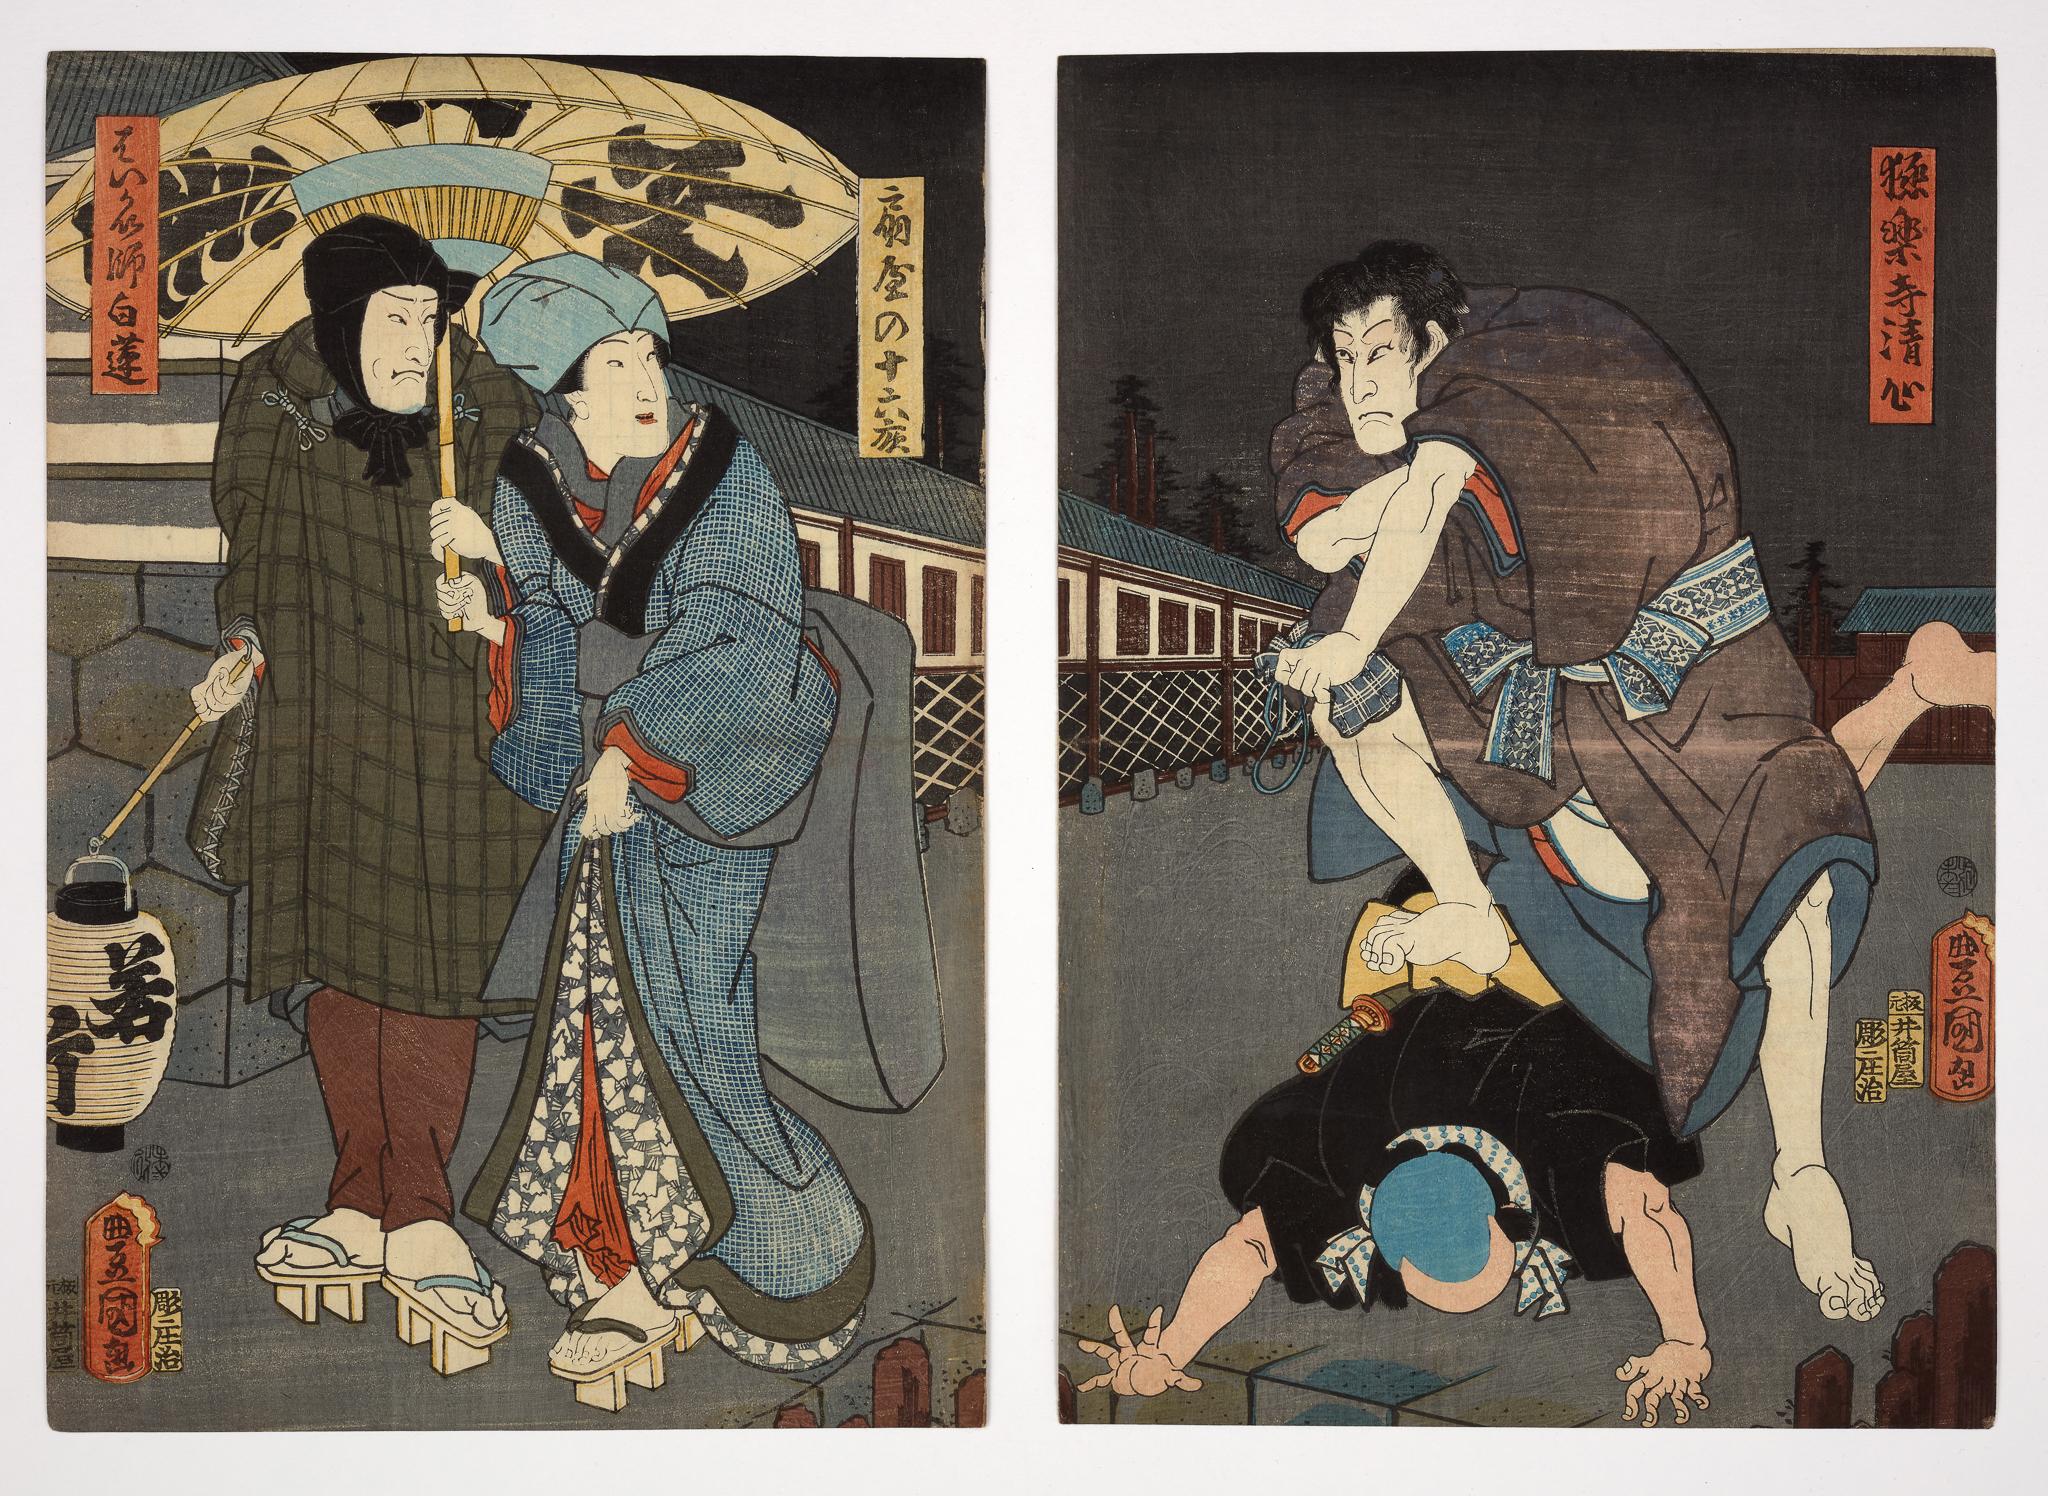 Original Japanese woodblock print